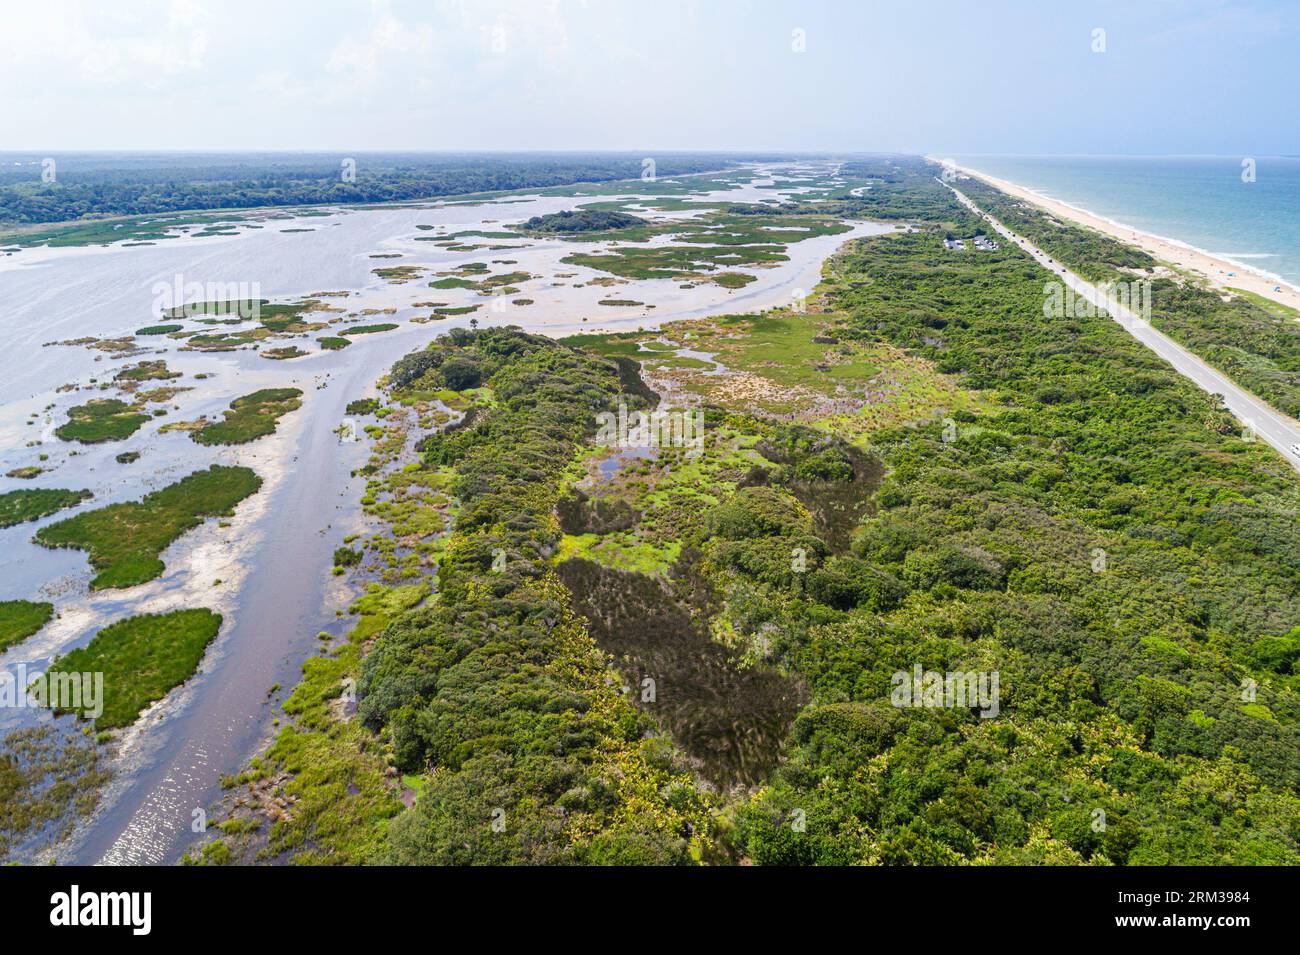 Ponte Vedra Beach Florida, Guana River Wildlife Management area, autostrada Route A1A, Oceano Atlantico, vista aerea dall'alto, palude saline marine Foto Stock